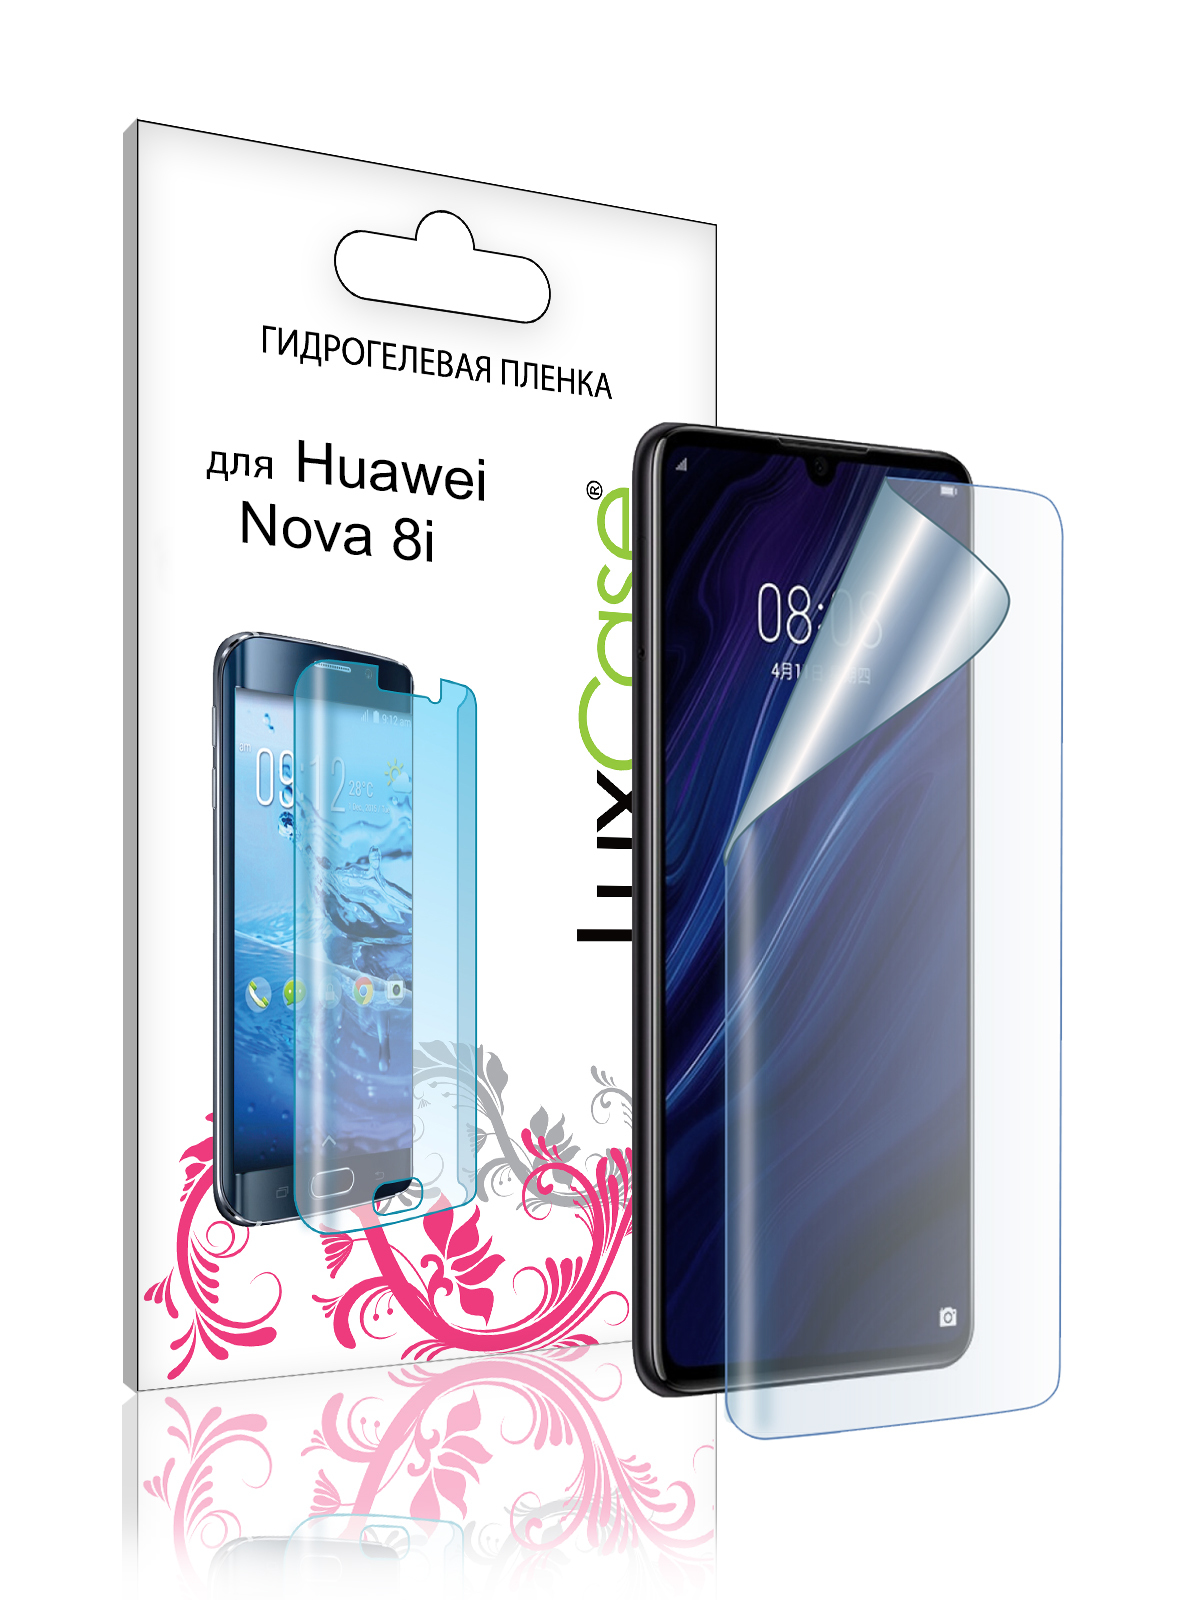 Гидрогелевая пленка LuxCase для Huawei Nova 8i 0.14mm Front Transparent 89900 глянцевая защитная premium плёнка для huawei nova 8i гидрогелевая на дисплей для телефона